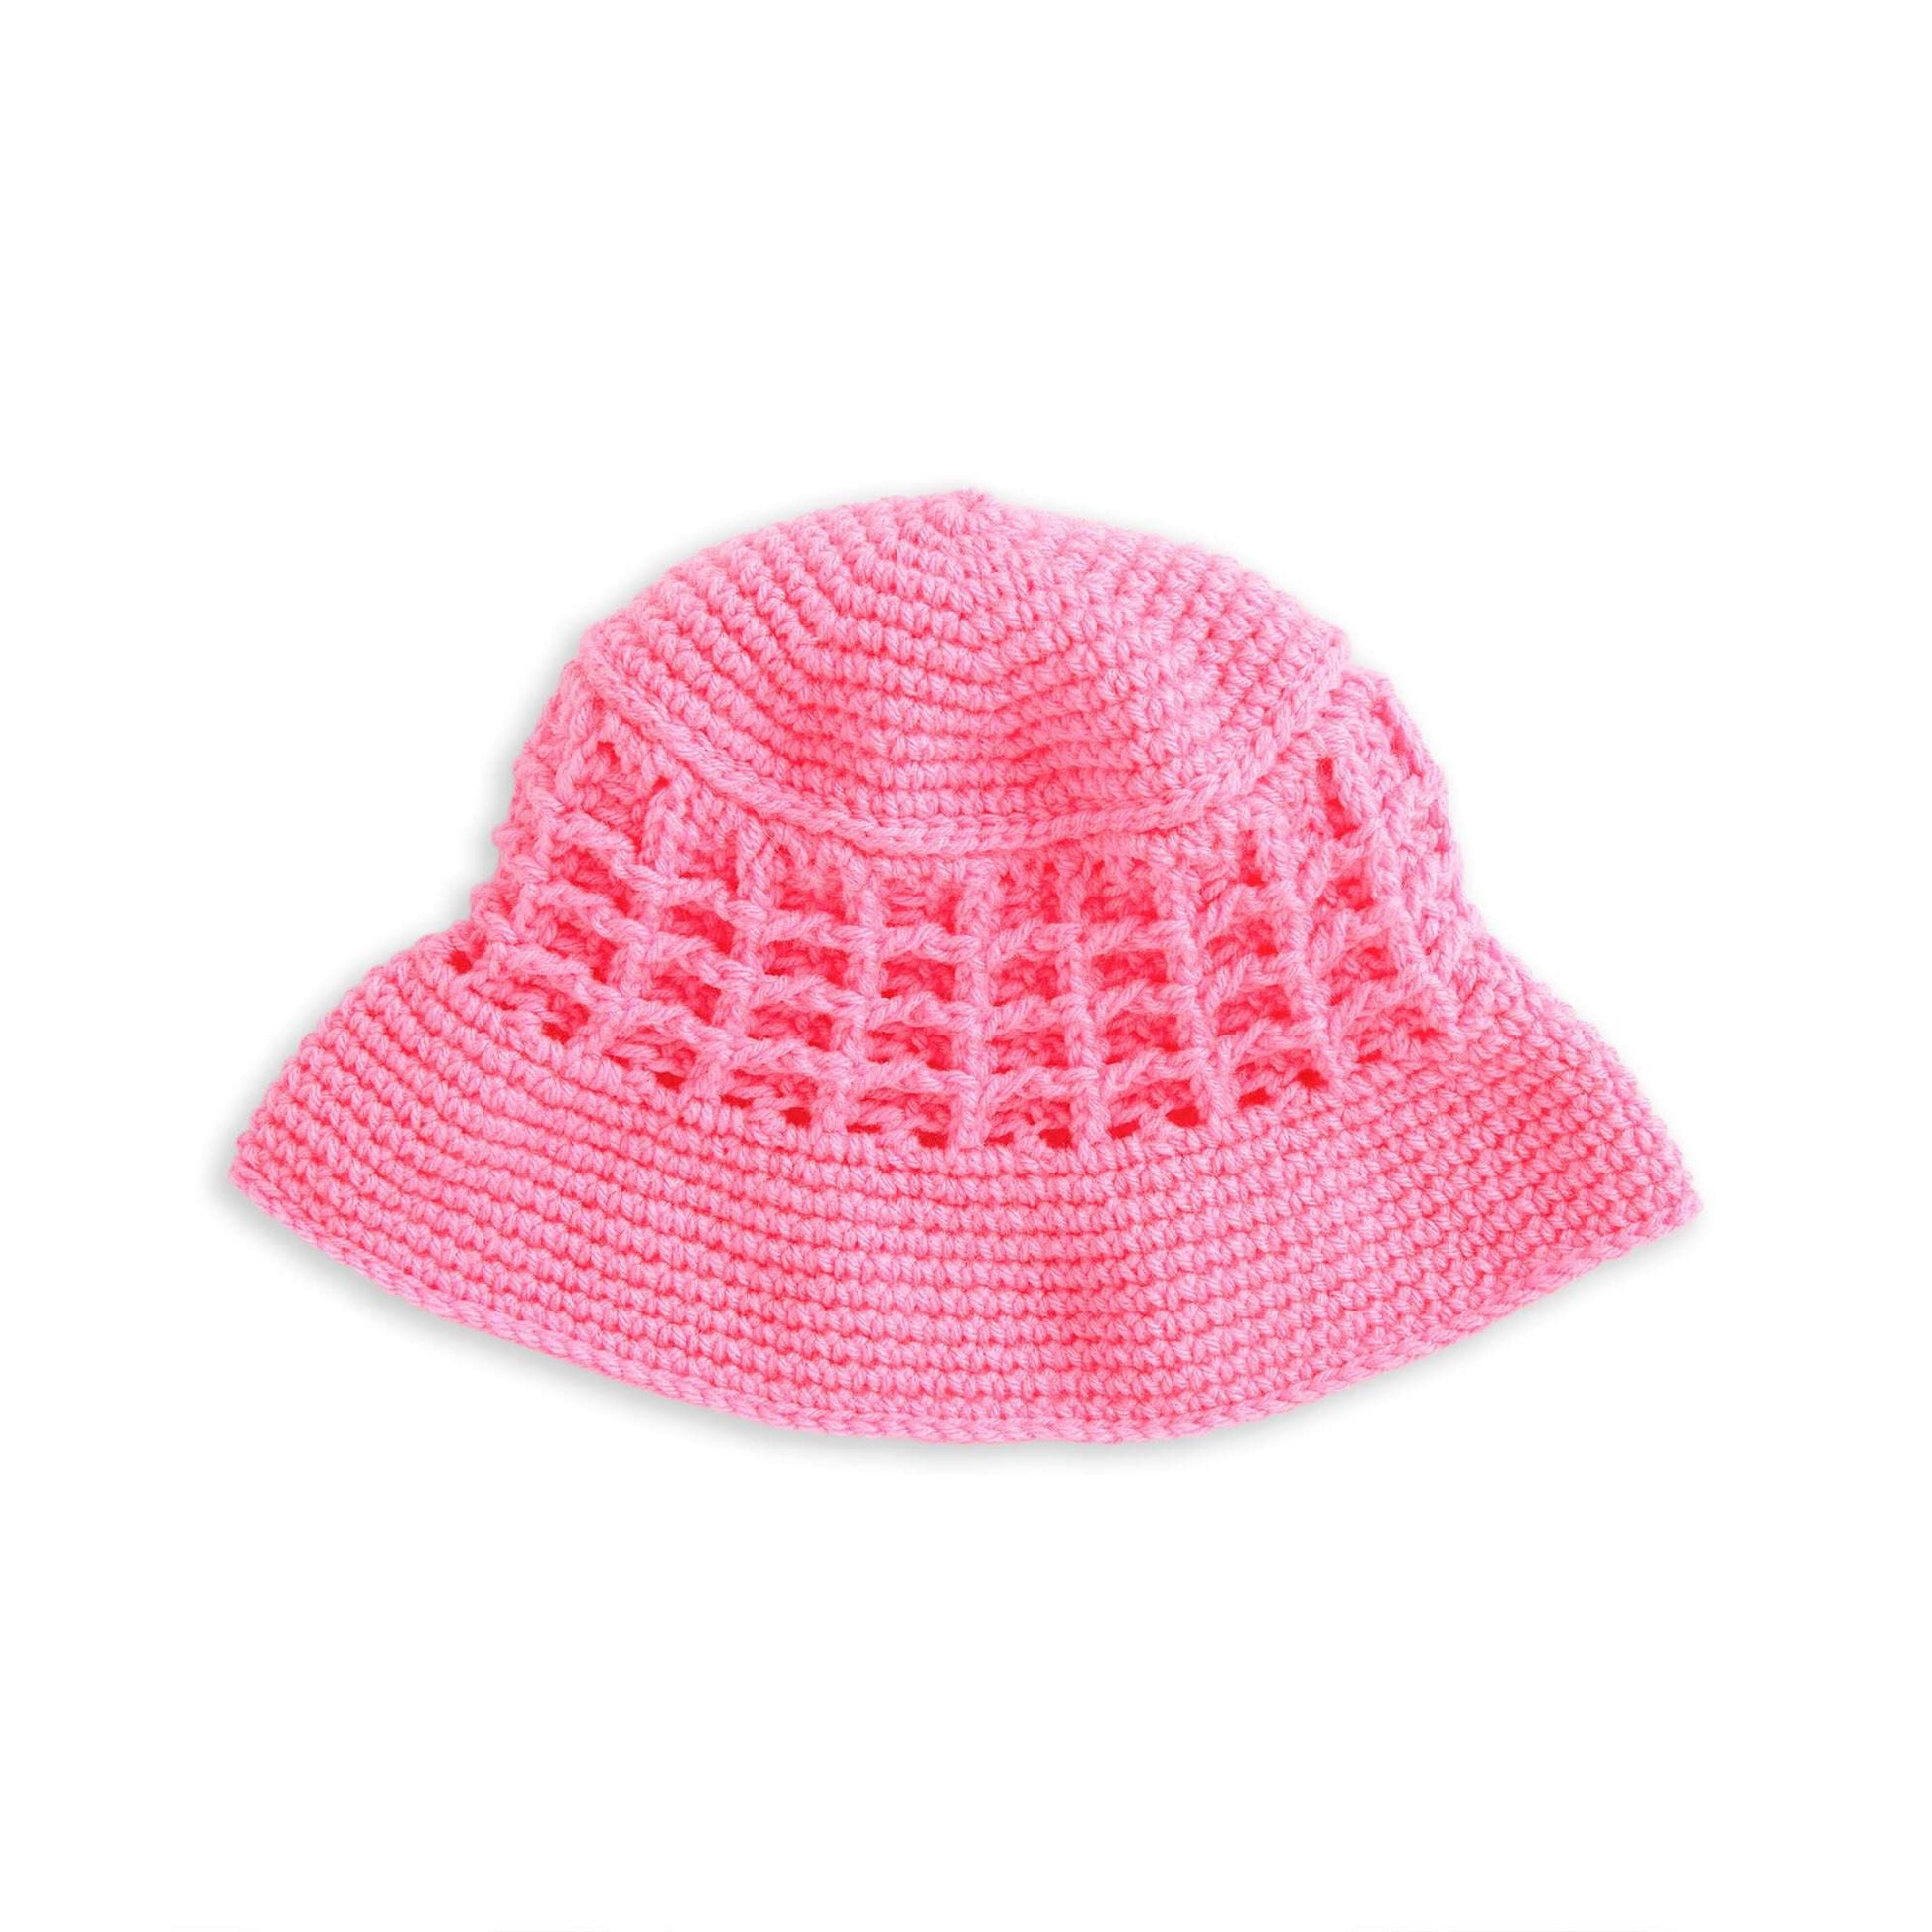 Free Red Heart Crochet Bucket Of Waffles Hat Pattern